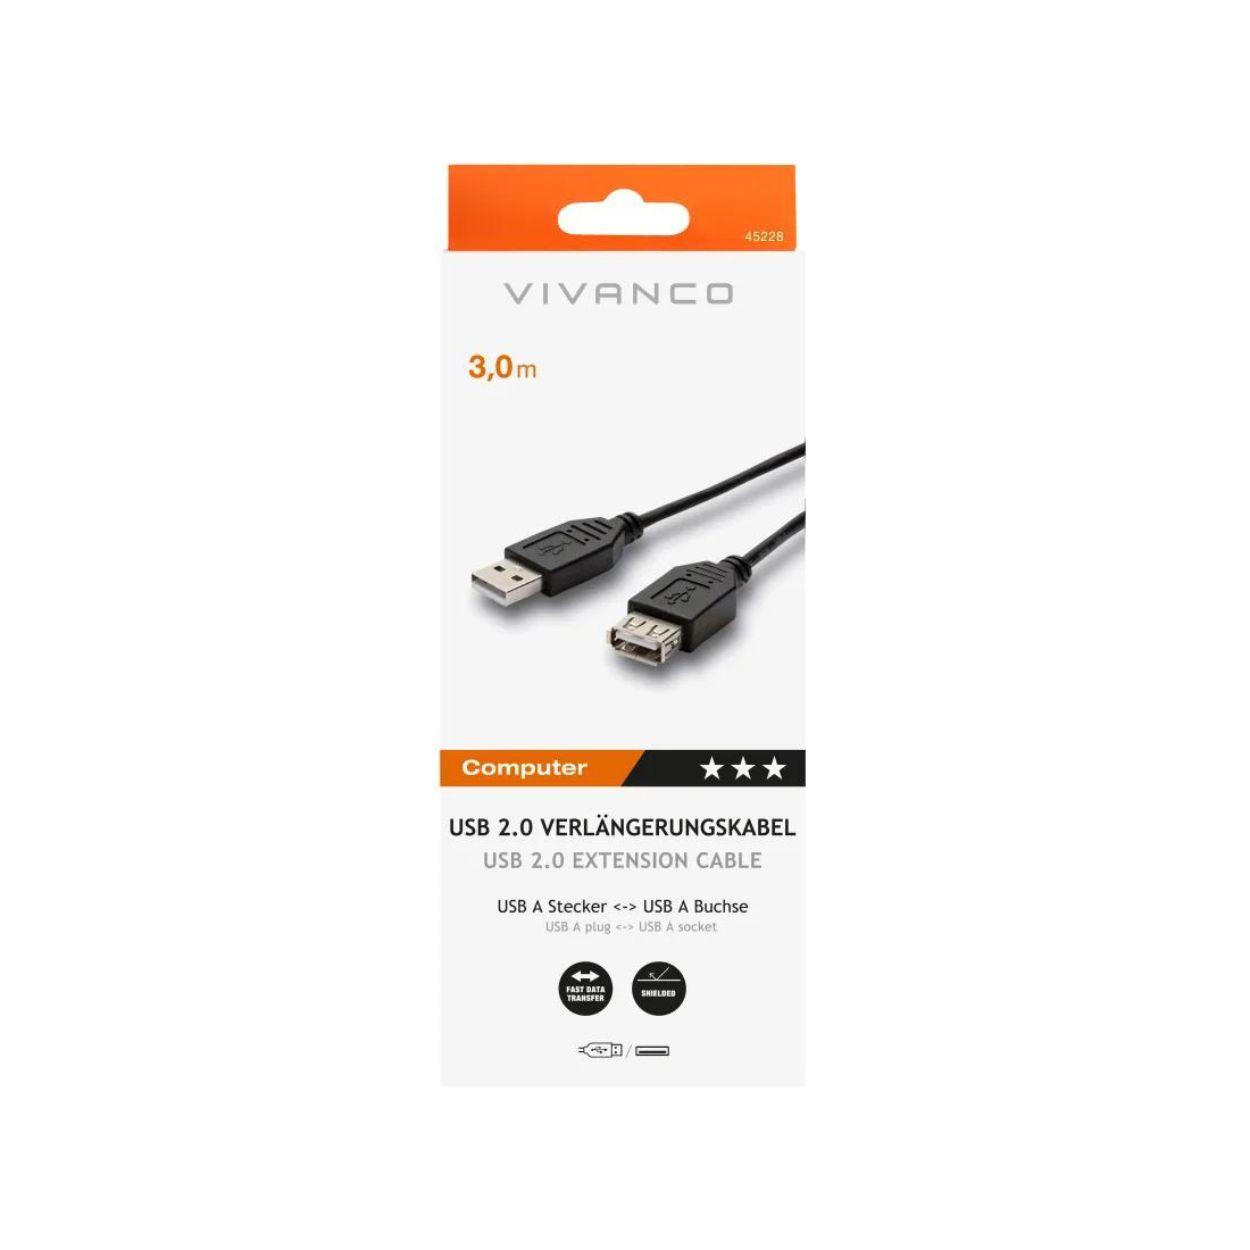 VIVANCO 45228 Kabel USB